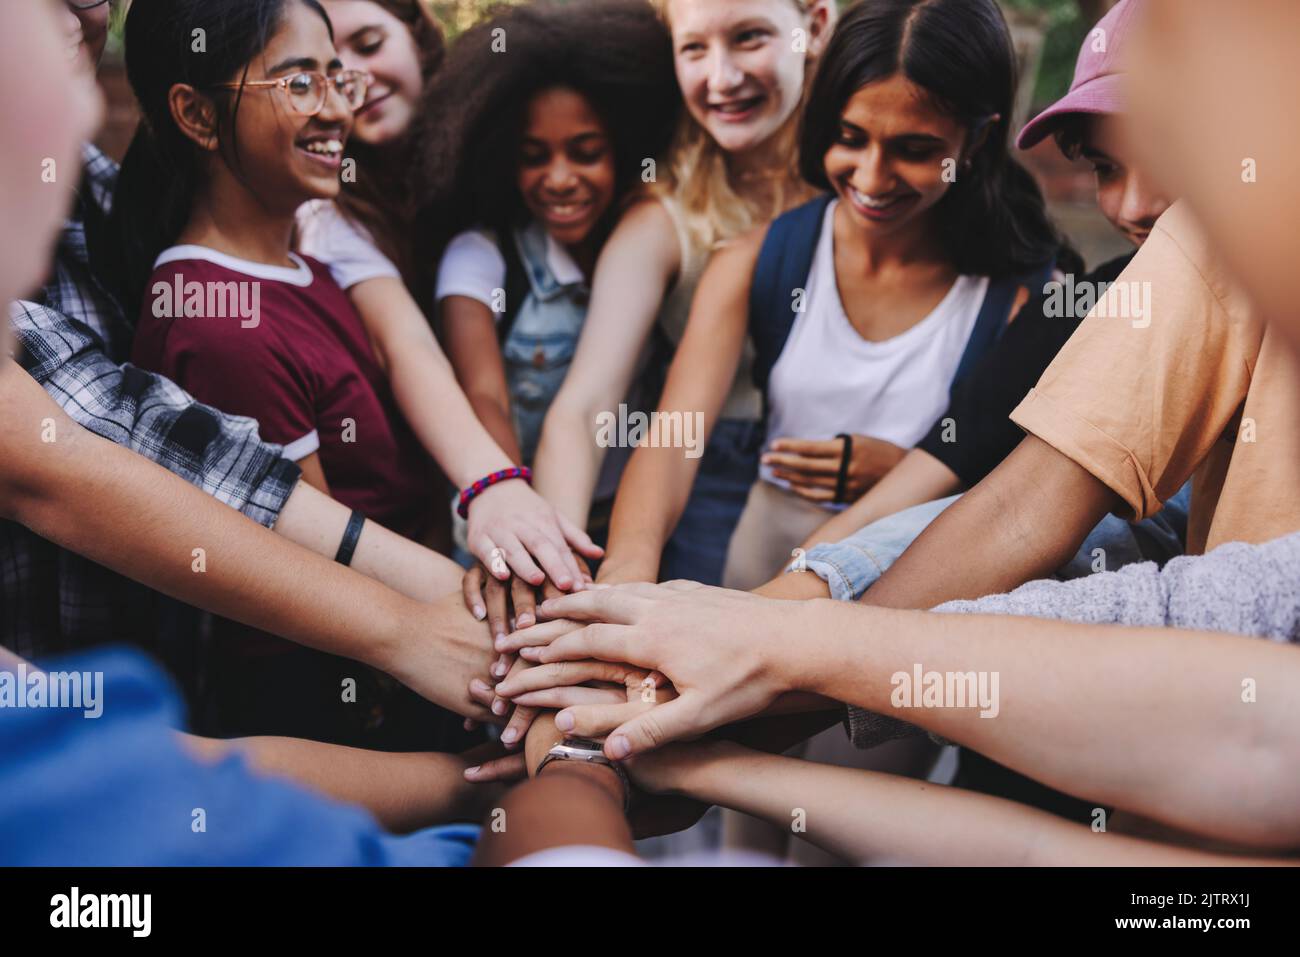 Teenager lächeln fröhlich, während sie ihre Hände in einer Hudle zusammenlegen. Gruppe multikultureller Studenten, die einen Stapel Hände bilden Stockfoto